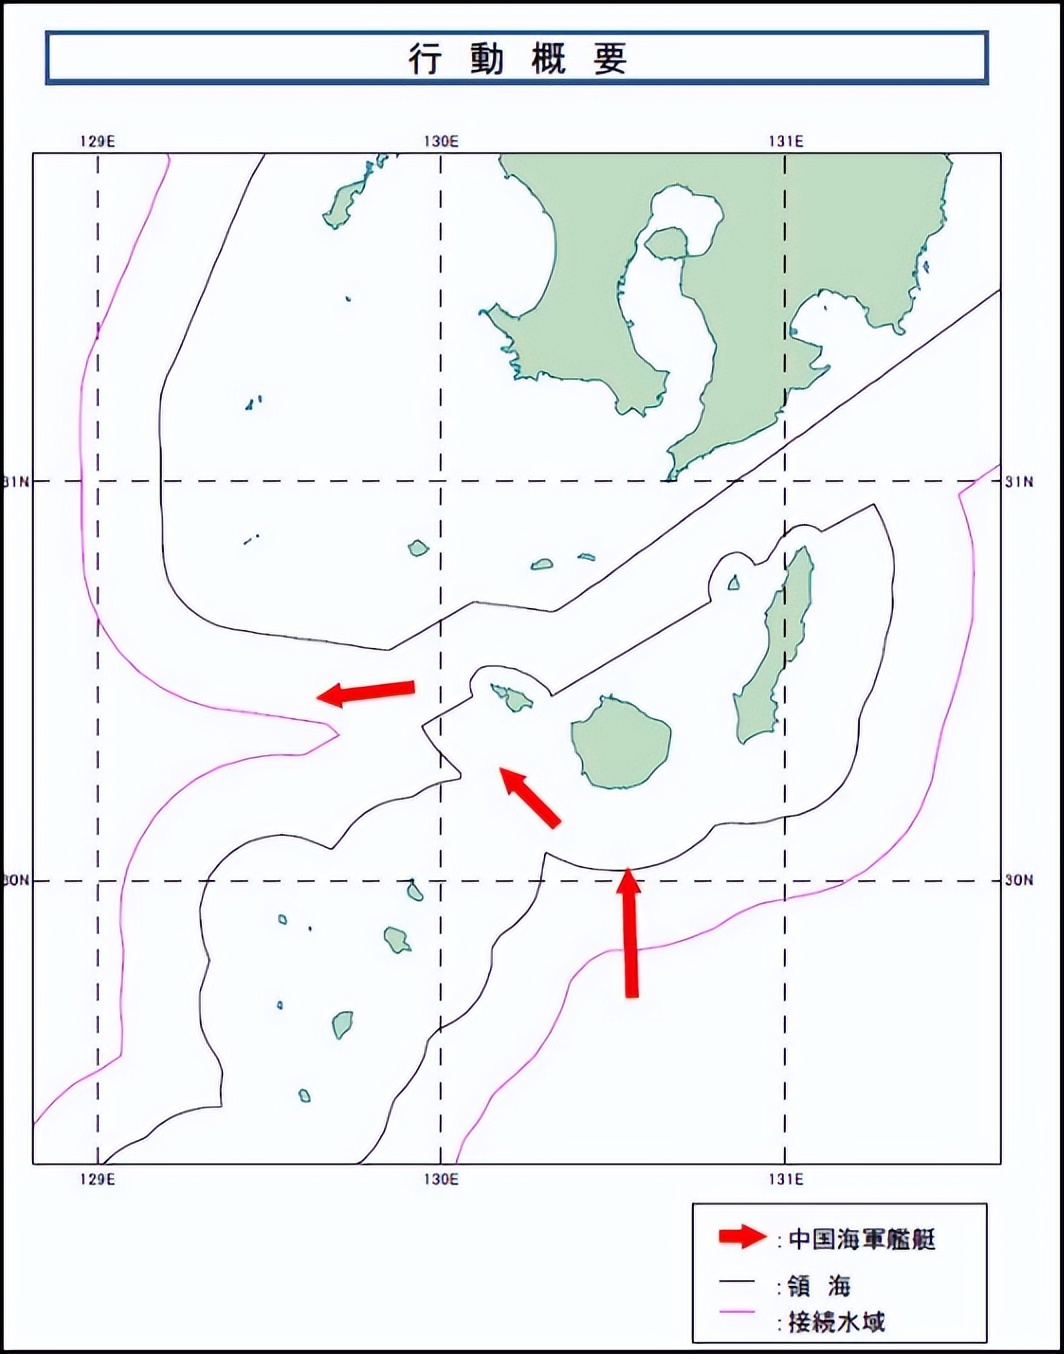 日本稱中方軍艦進入其“領海”，並偵察3個小時，已對華提出抗議